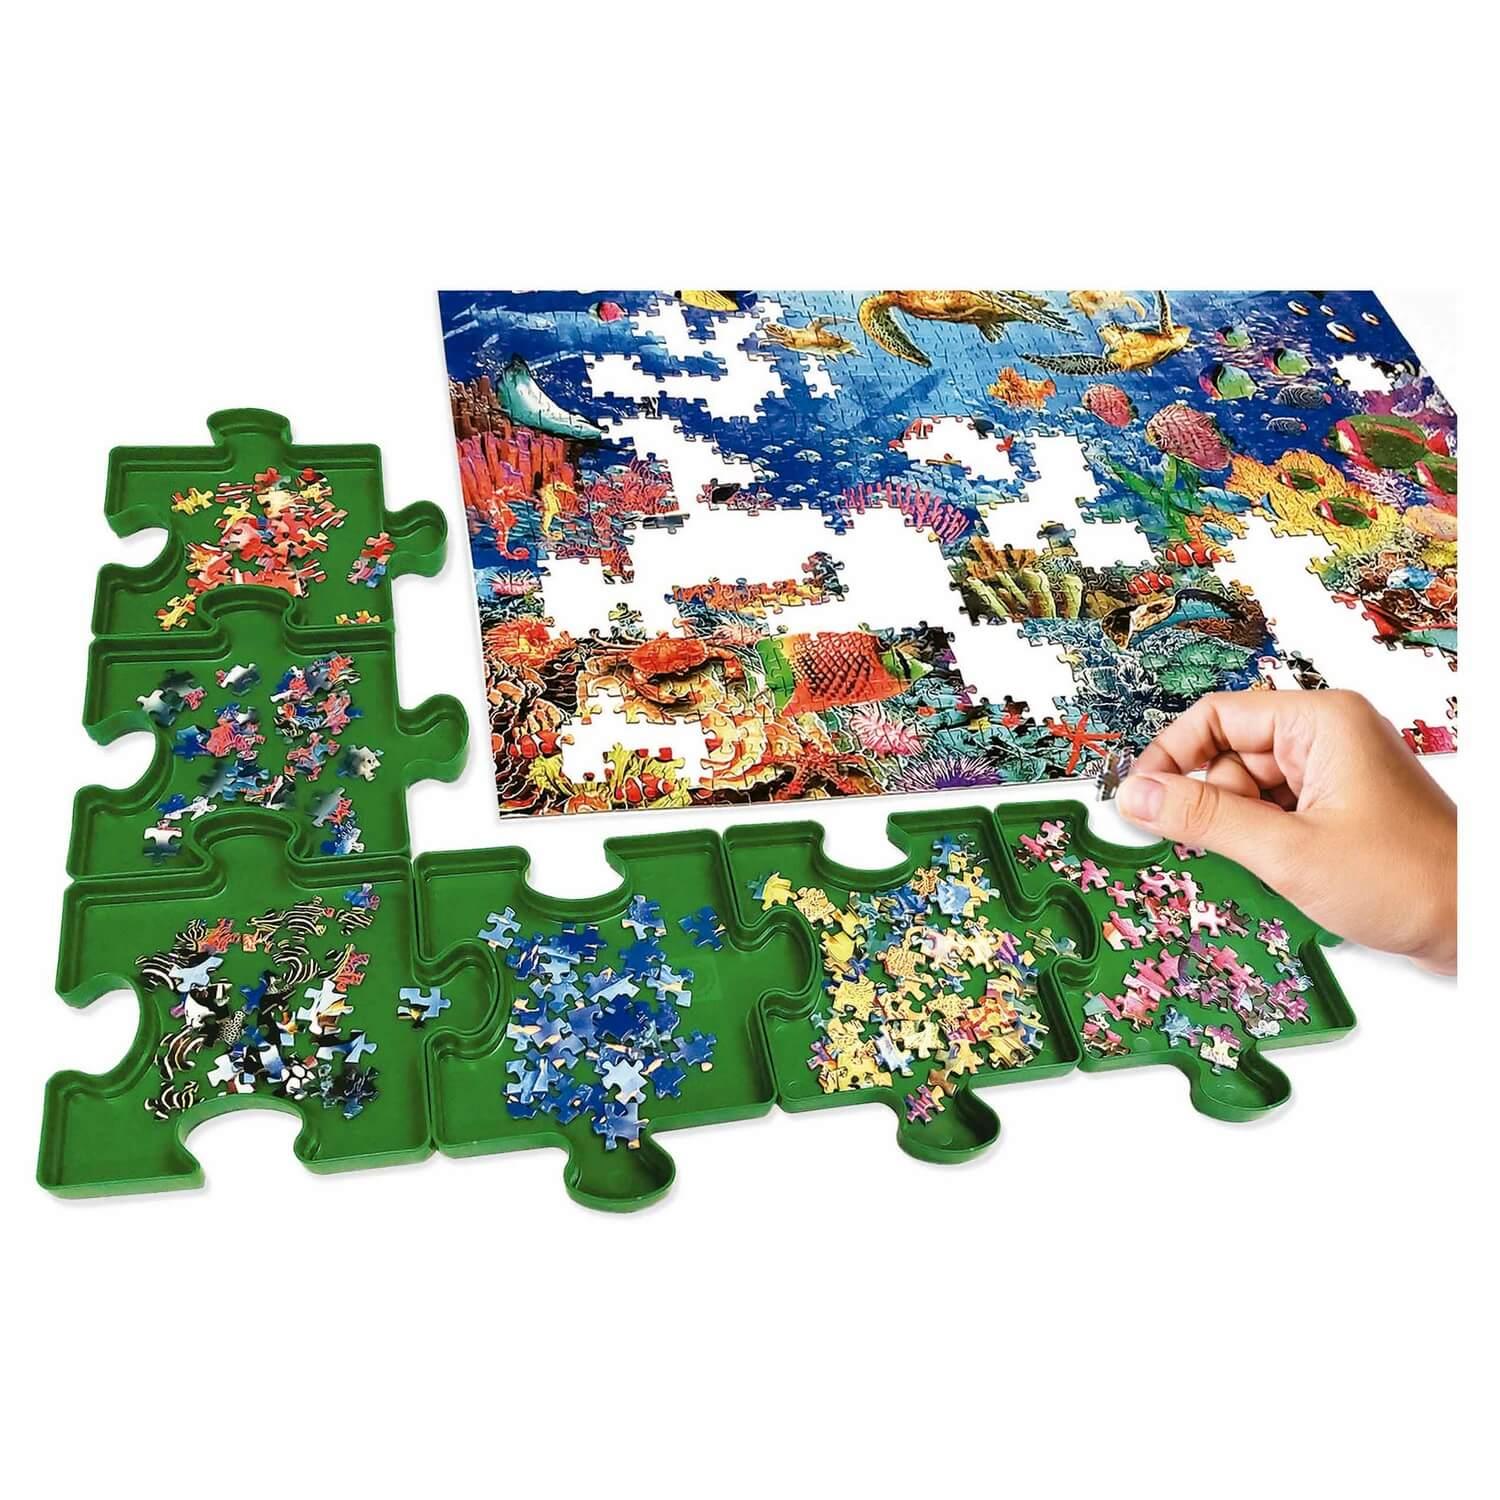 Trieur de pièces de puzzle - pour bien ranger son puzzle